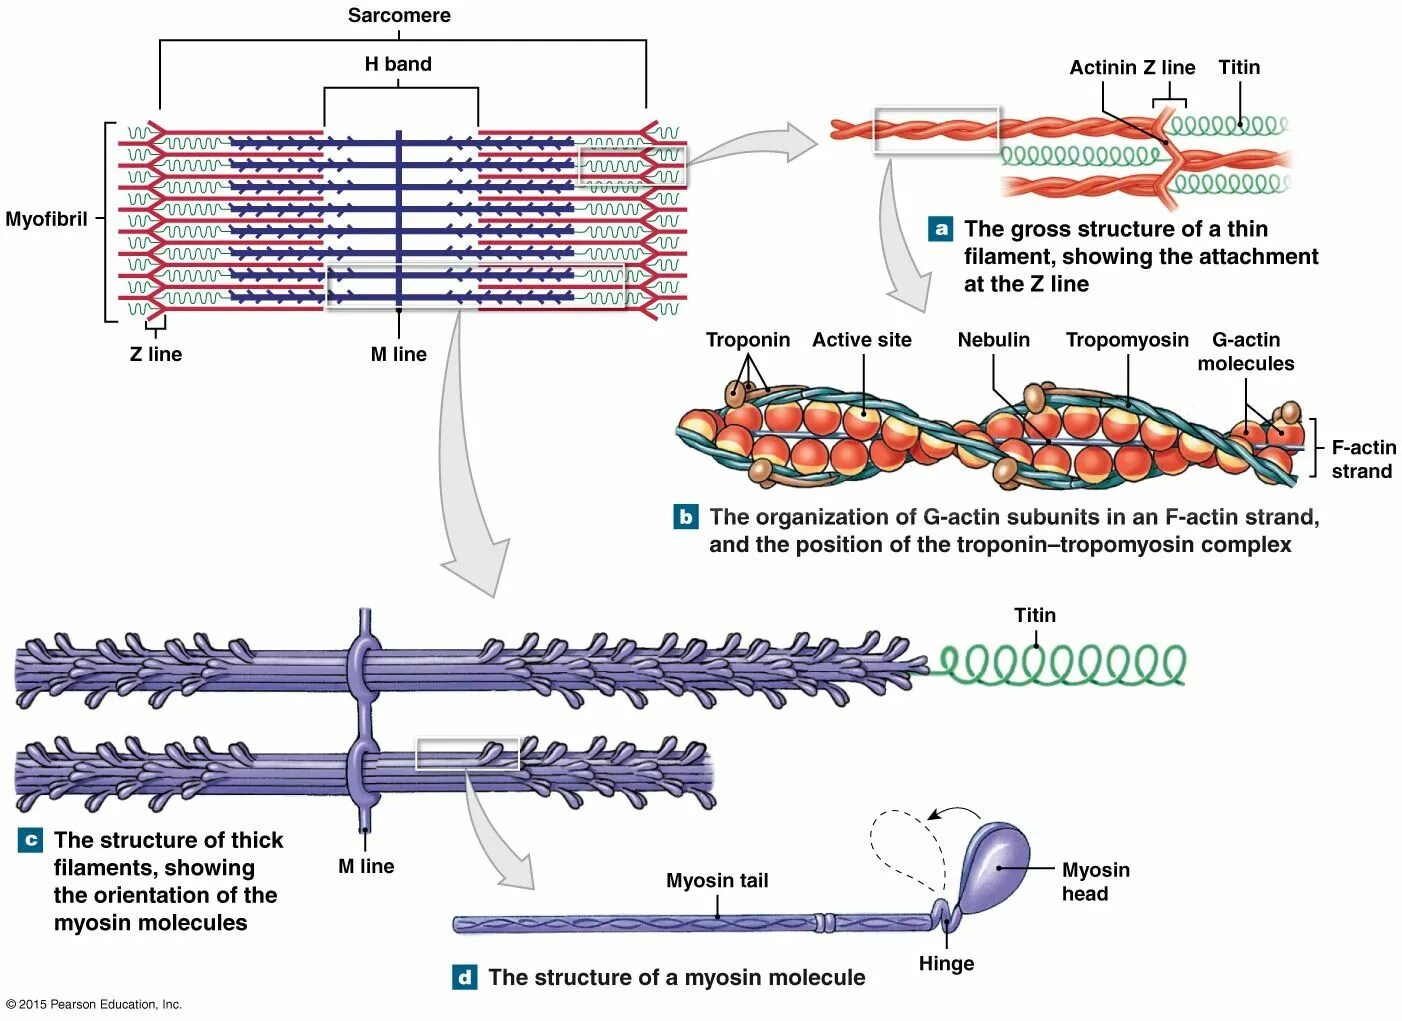 Myosin structure. Саркомер. Актин картина. Biochemistry of muscle contraction. Миозин мышечной ткани